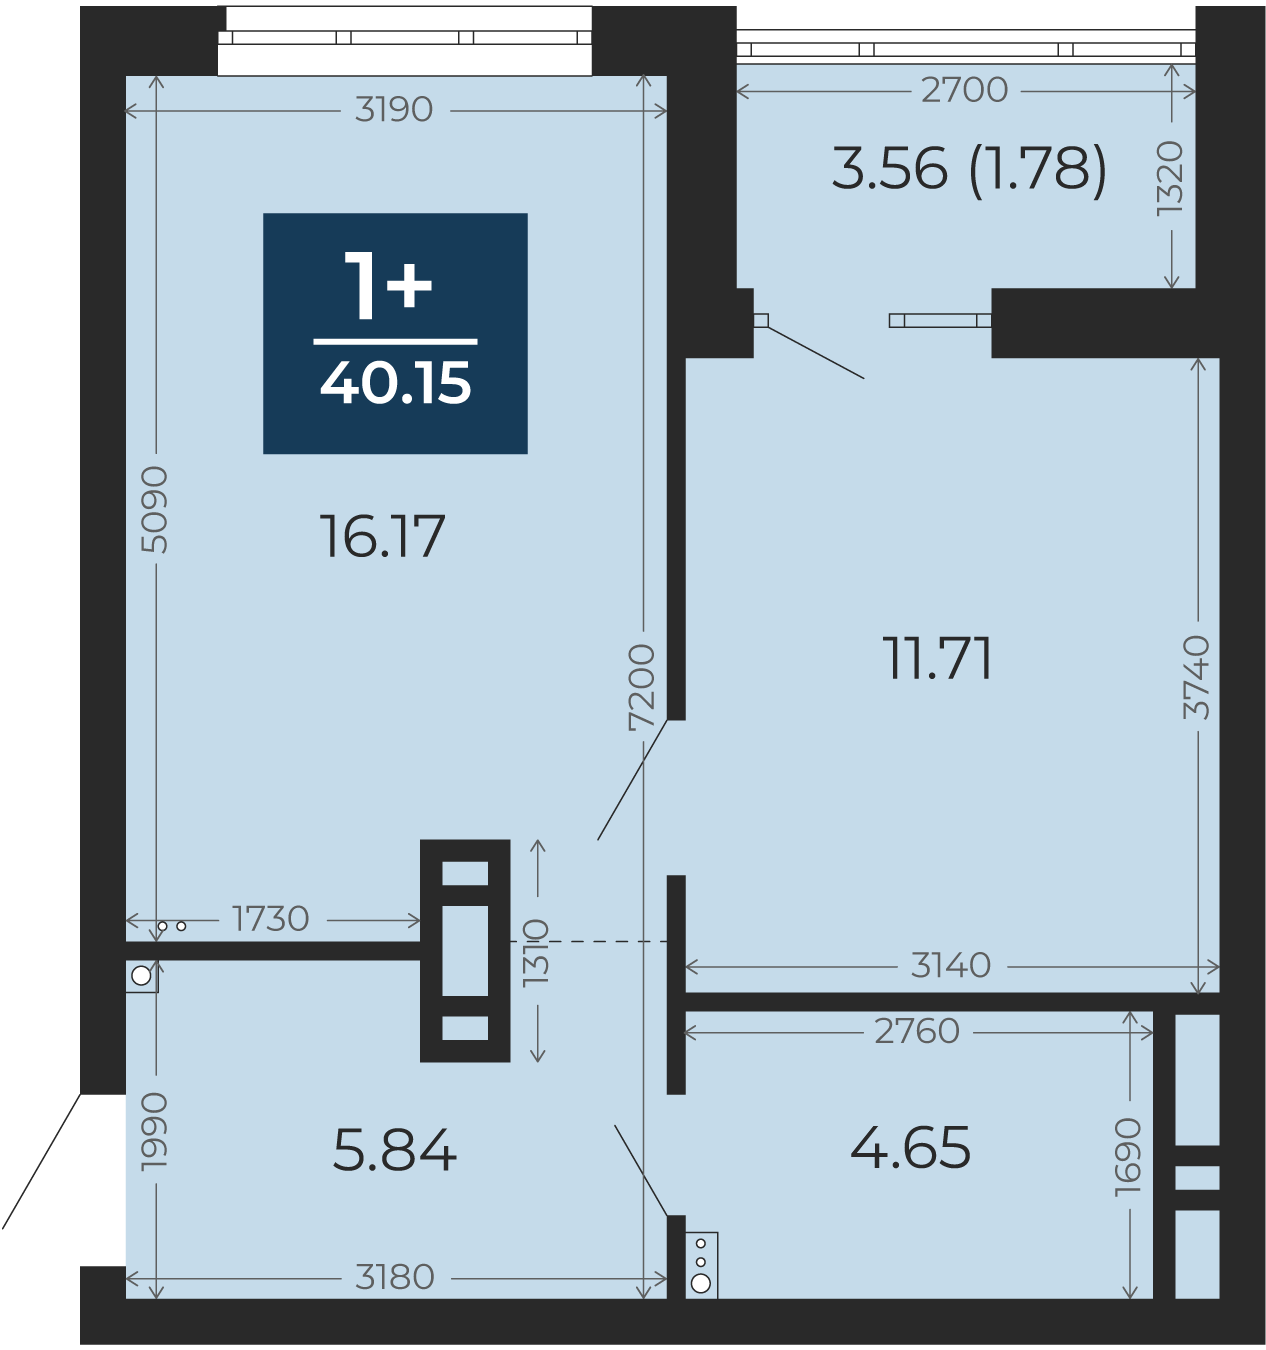 Квартира № 93, 1-комнатная, 40.15 кв. м, 13 этаж